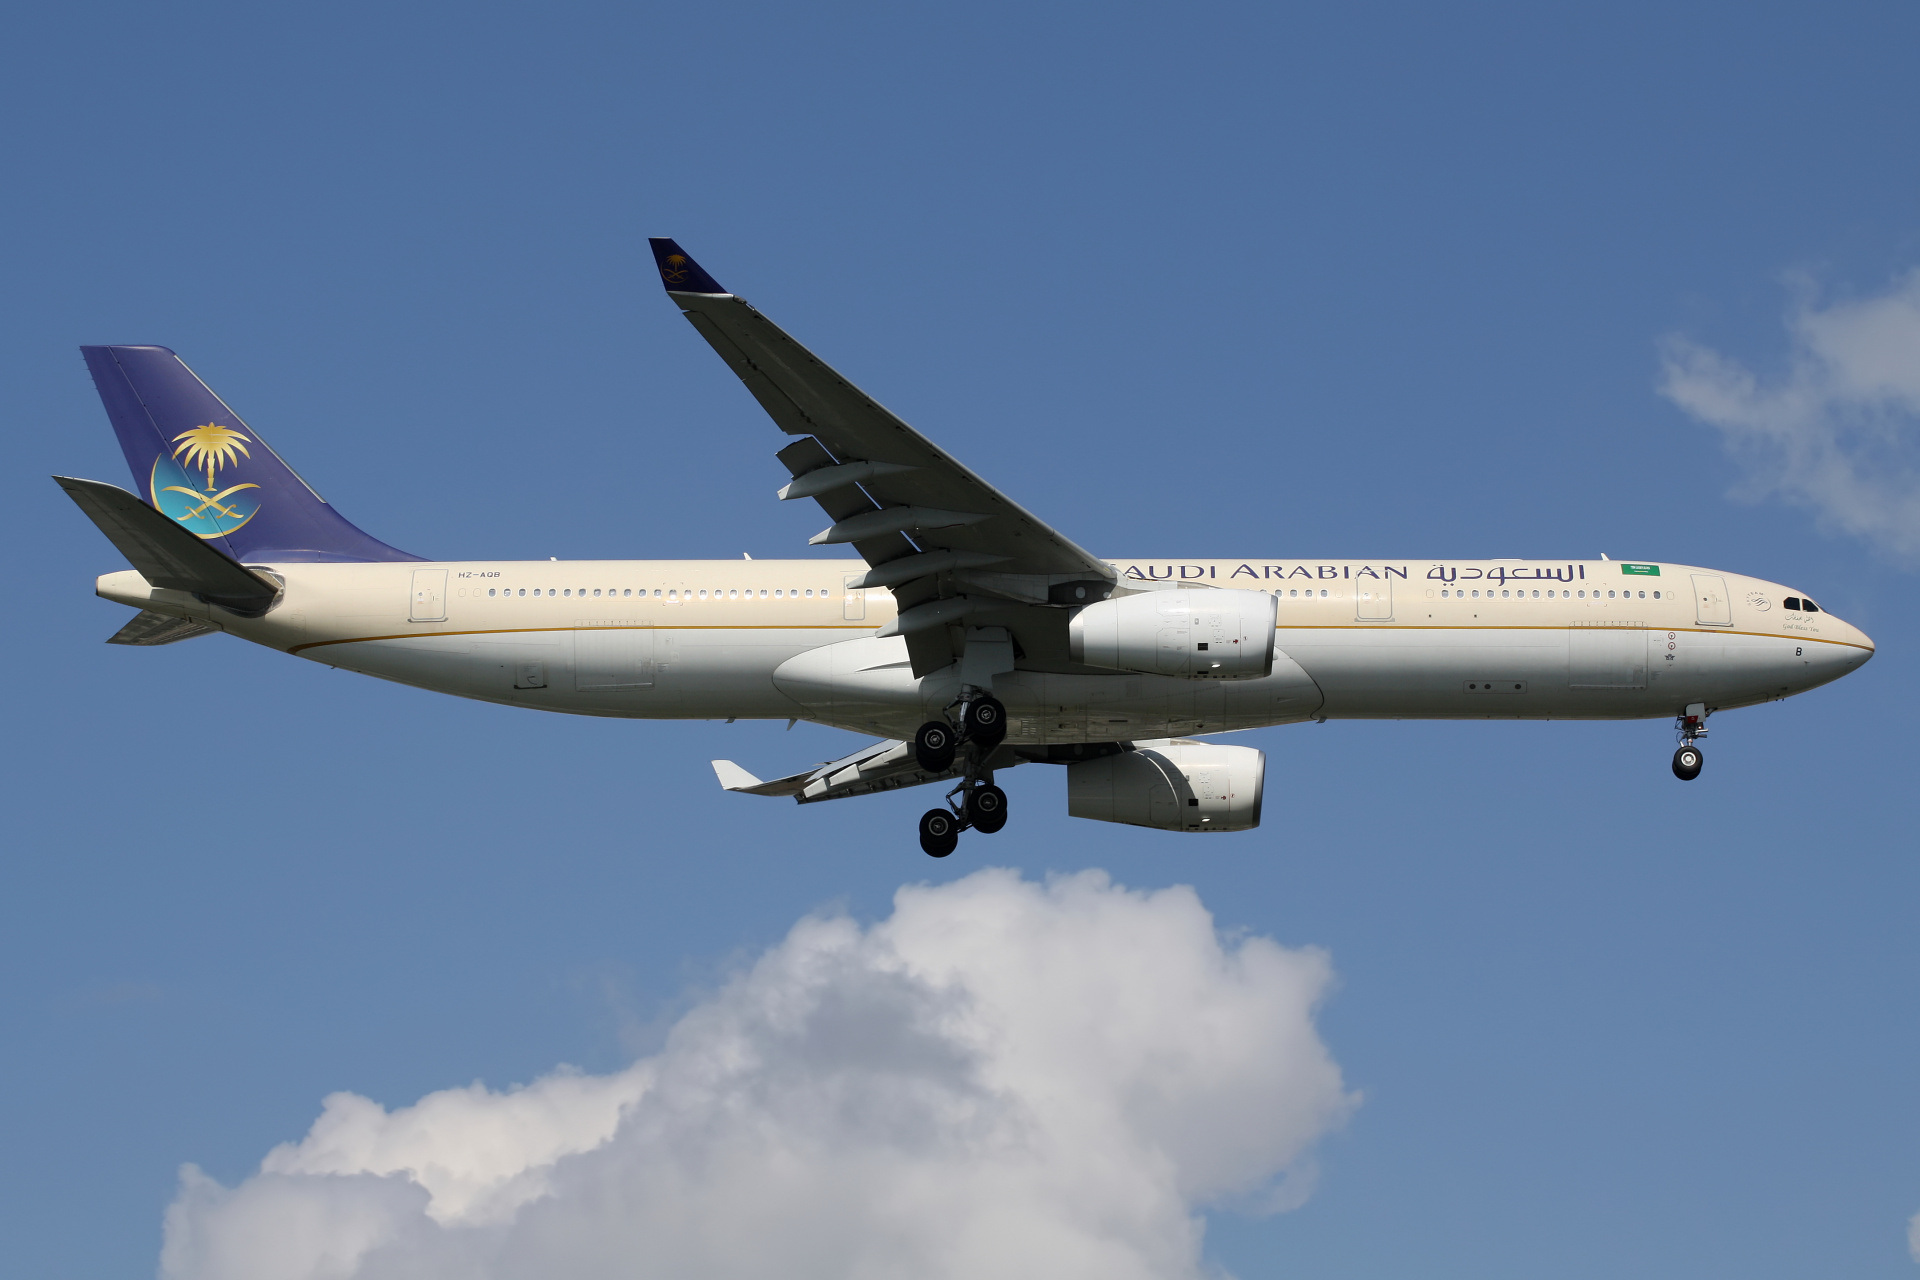 HZ-AQB, Saudi Arabian Airlines (Saudia) (Samoloty » Port Lotniczy im. Atatürka w Stambule » Airbus A330-300)